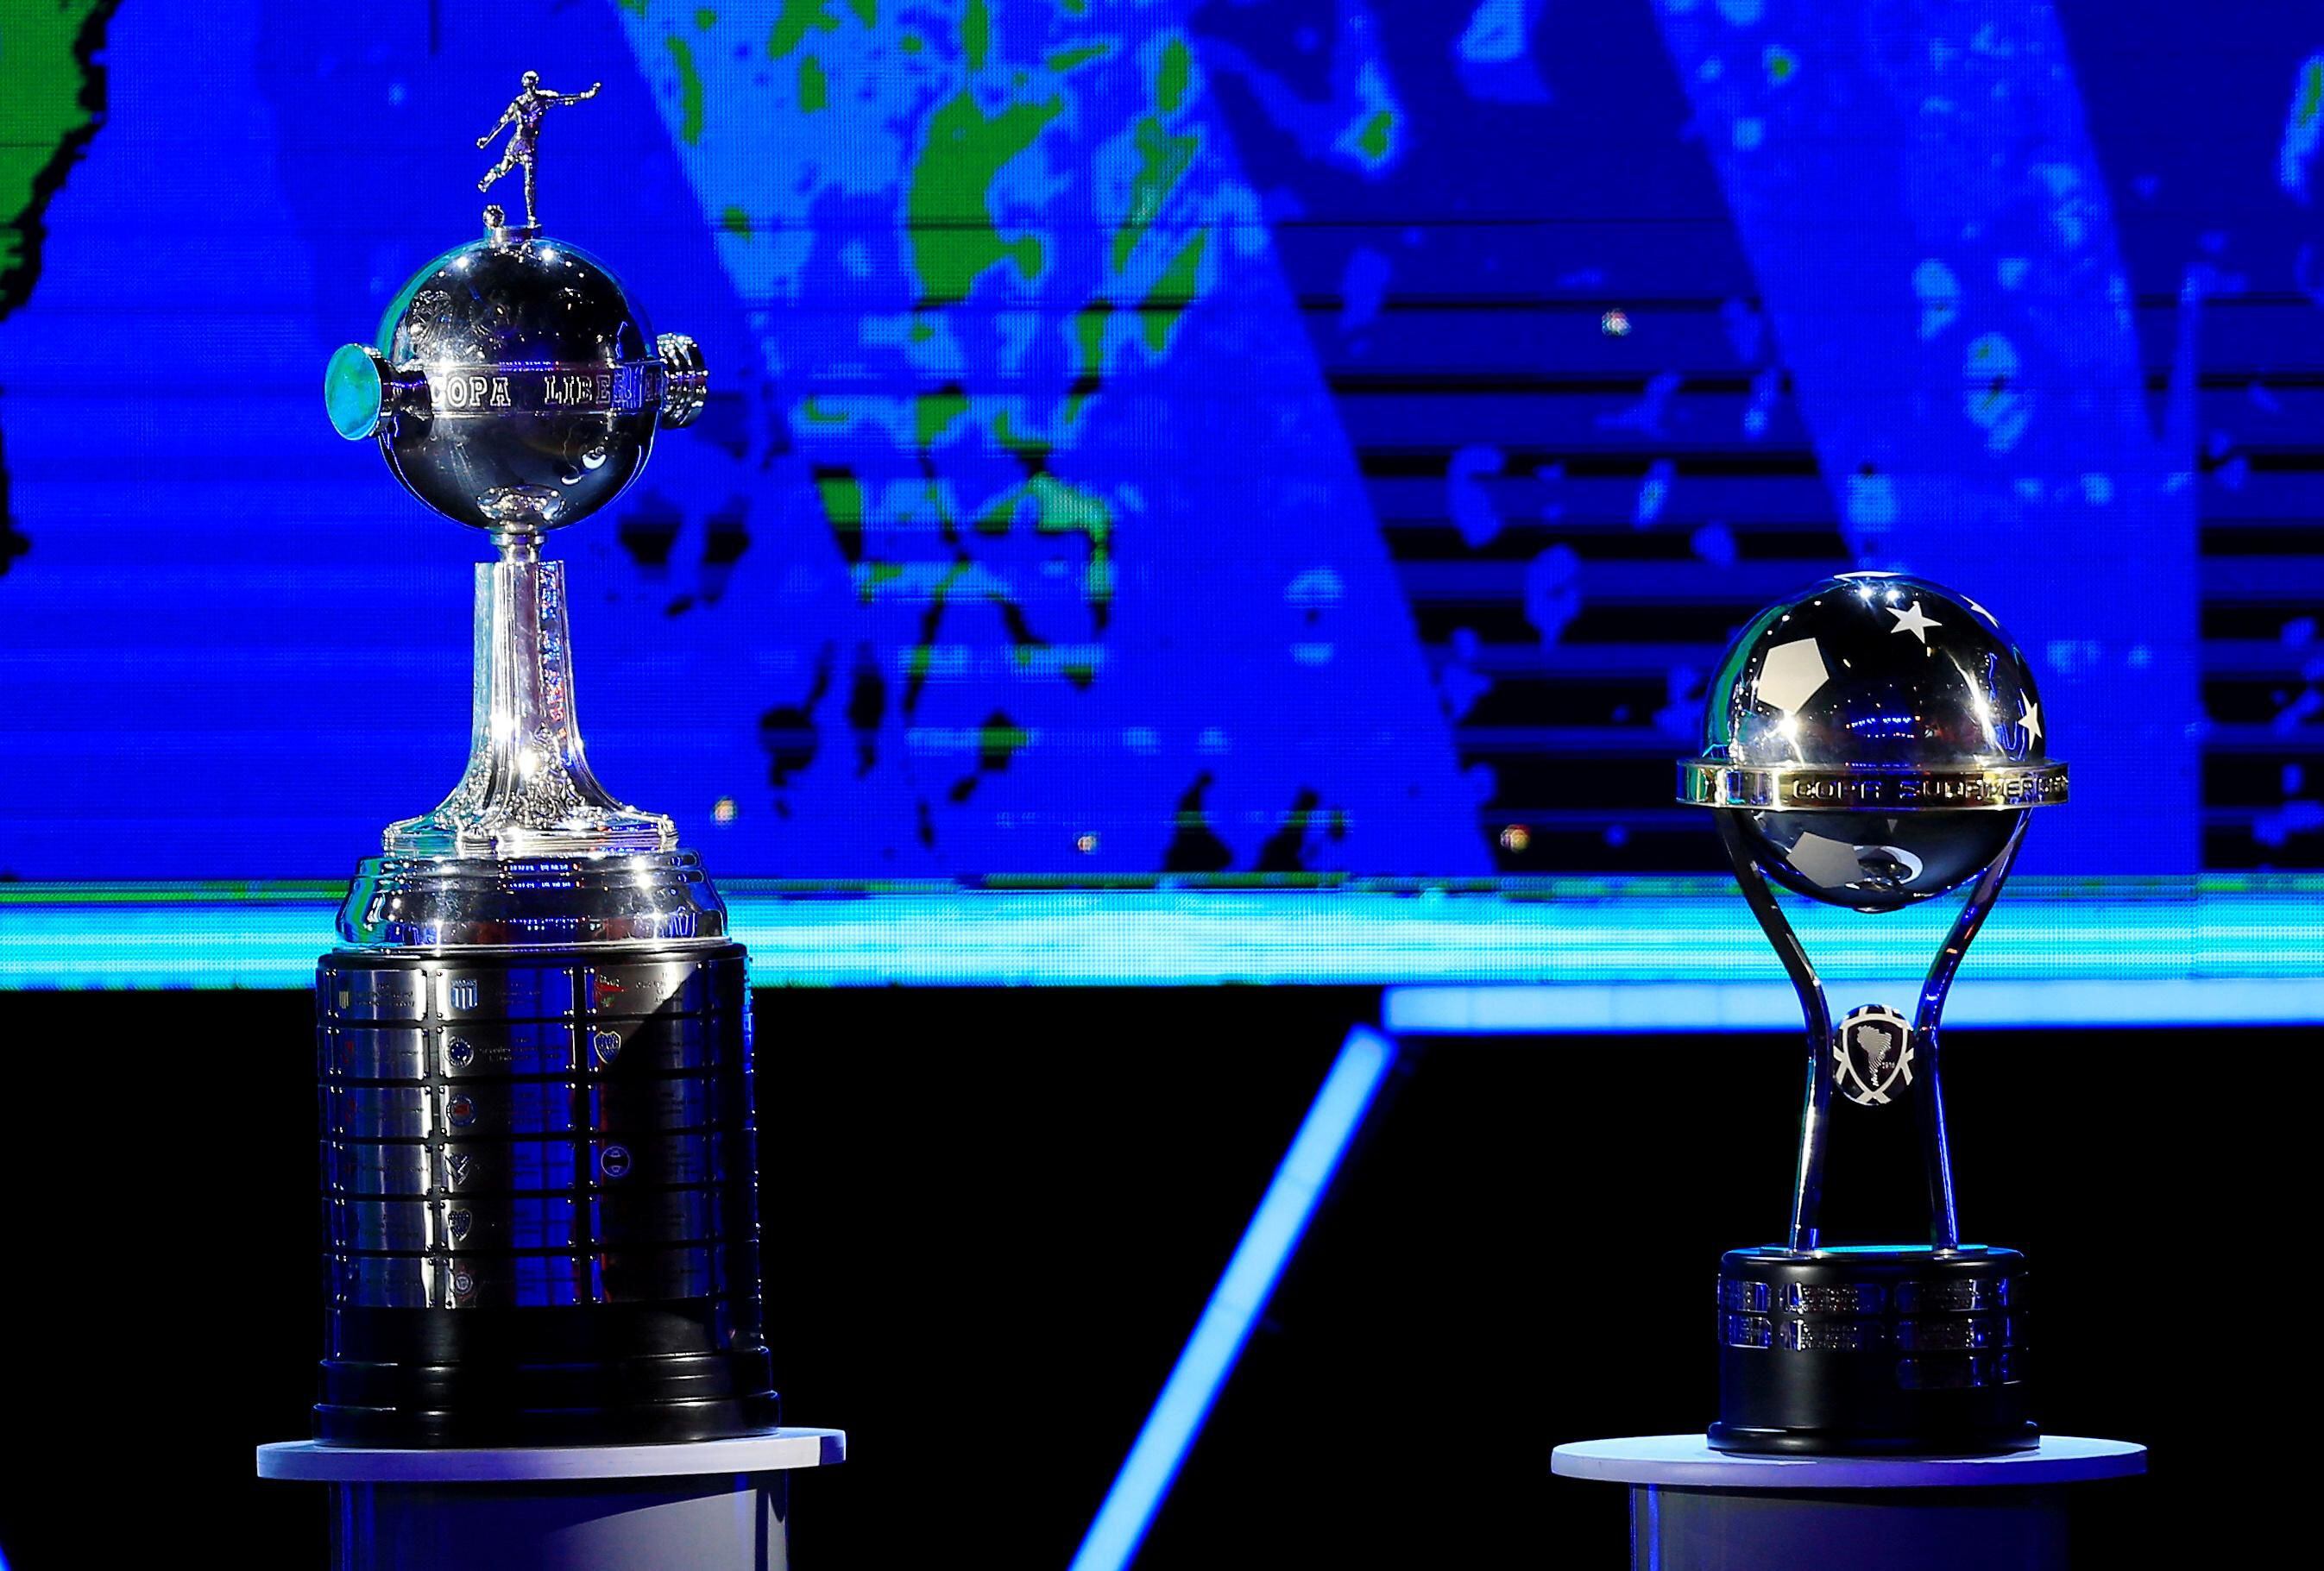 Semifinais da Sul-americana: veja classificados, confrontos e quando serão  os jogos